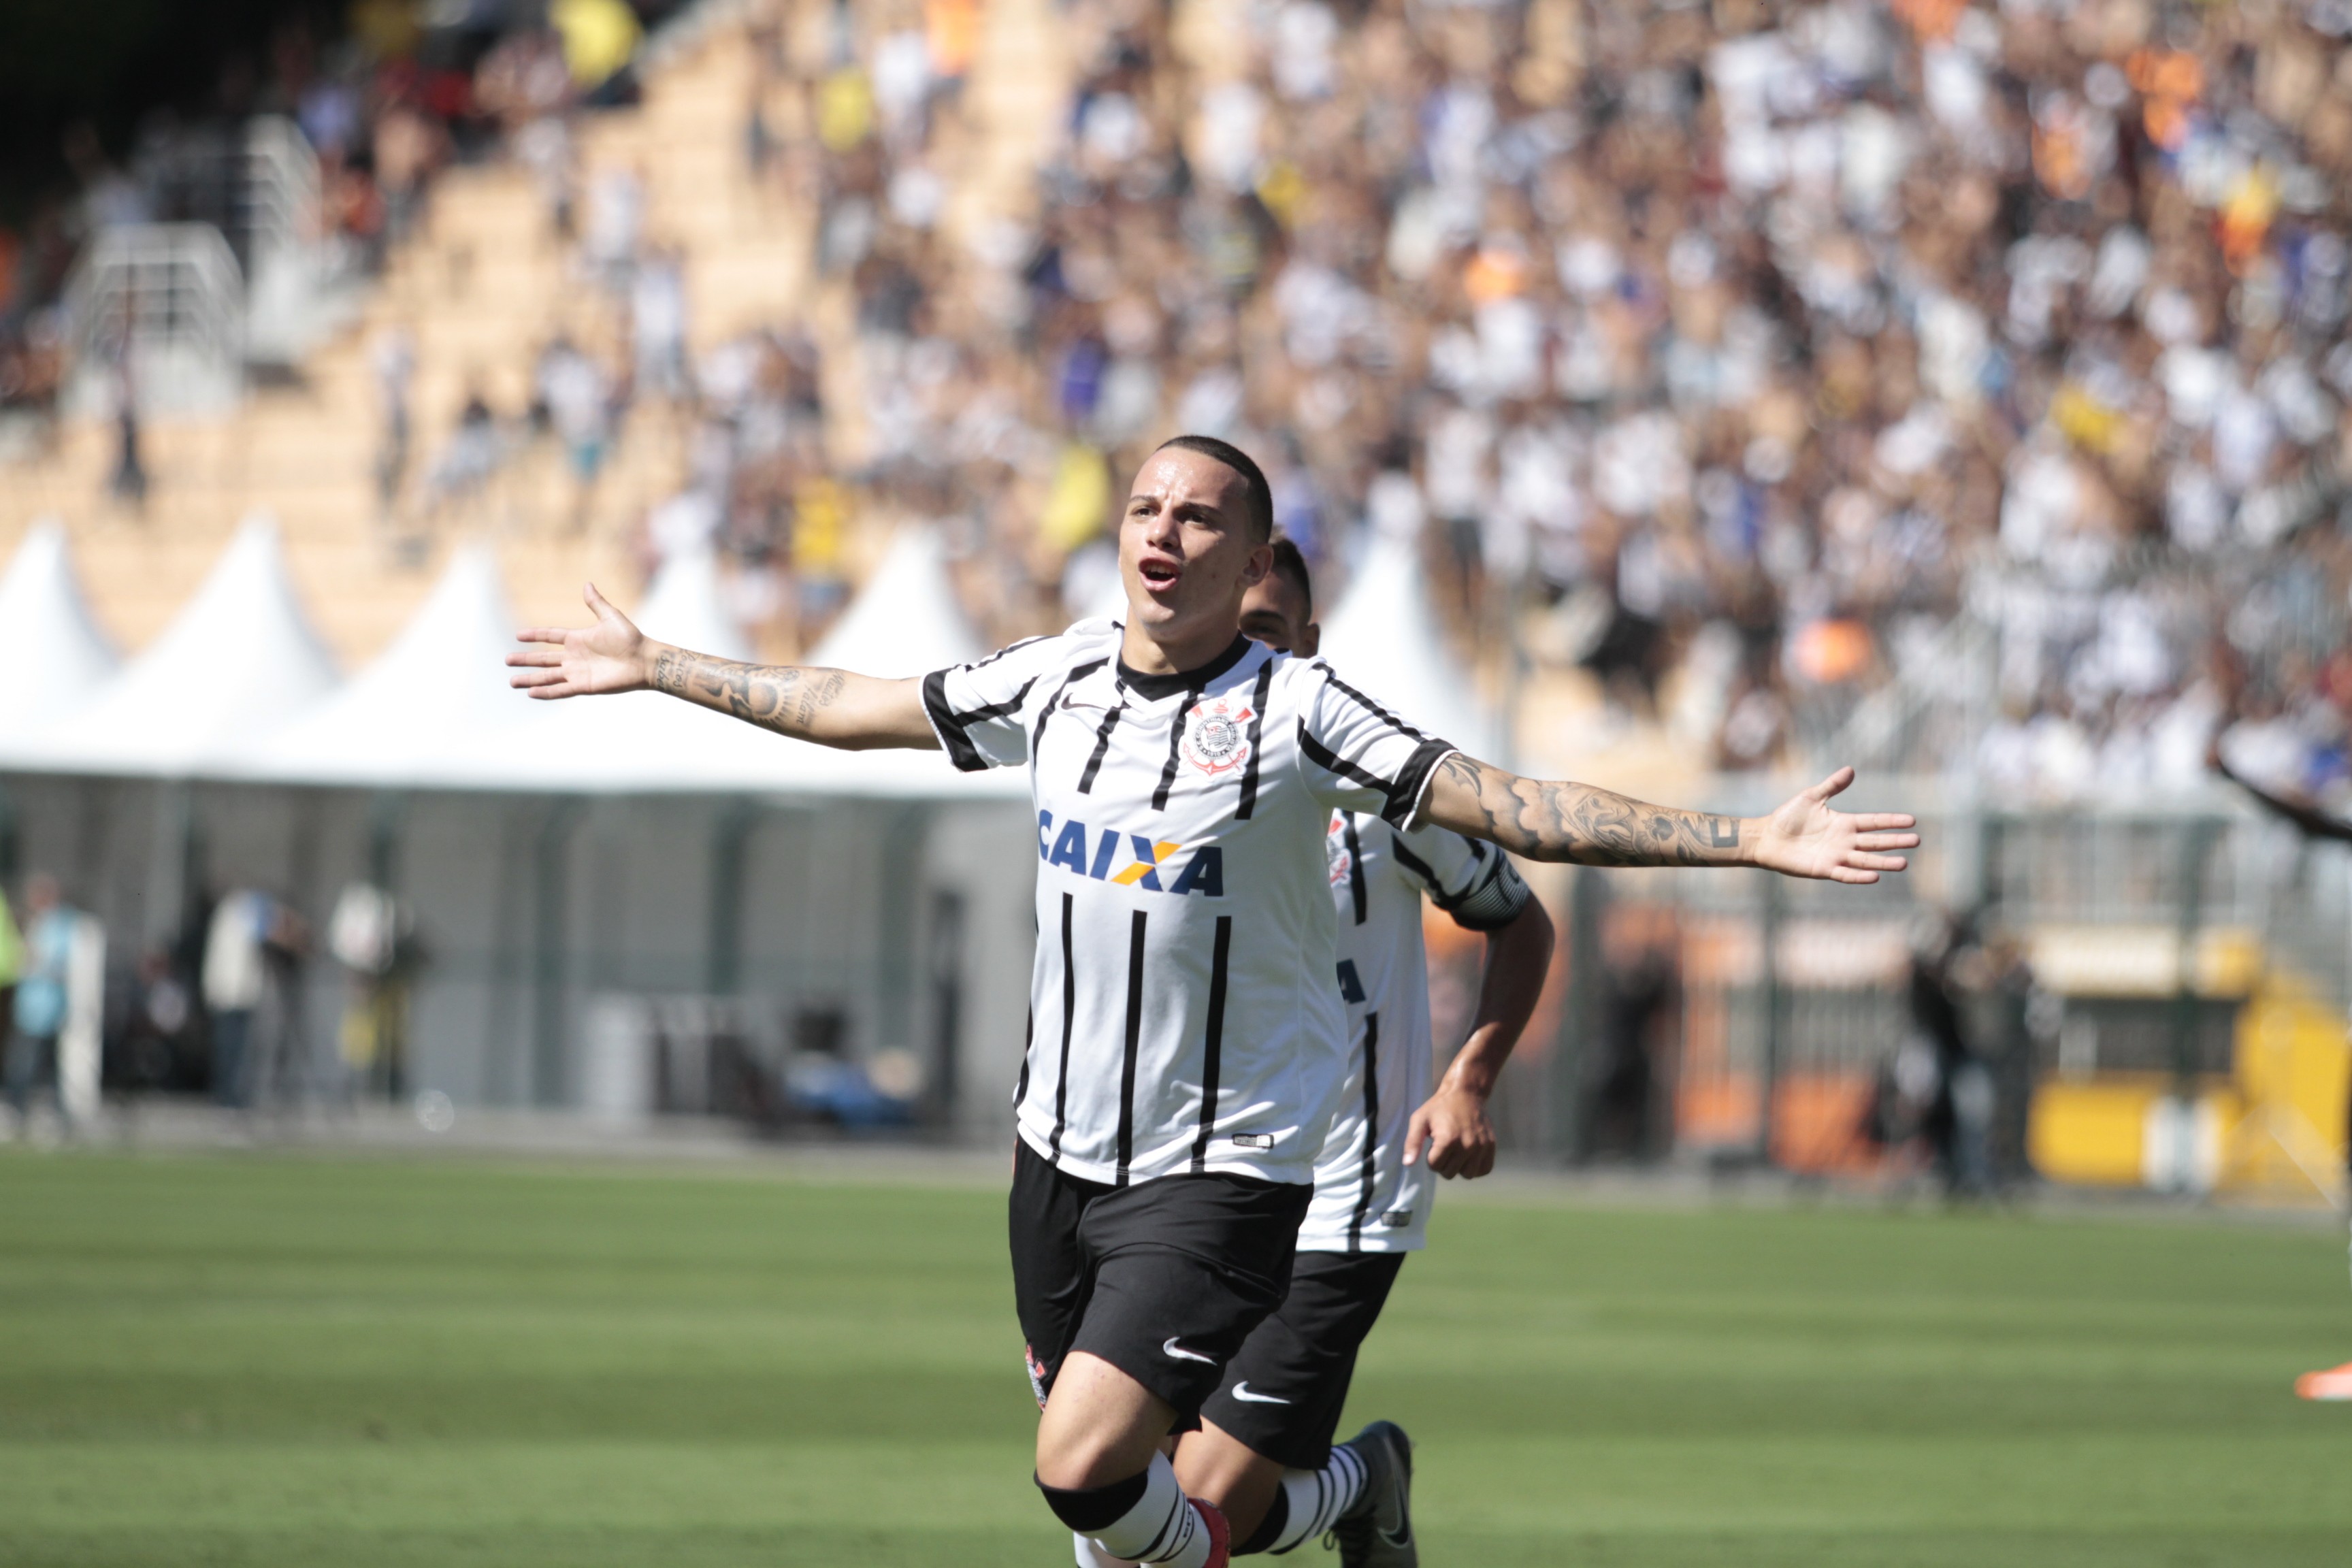 2015 - empate entre 3 jogadores / Gabriel Vasconcelos, 8 gols - Posição: atacante - Clube que defendeu: Corinthians - Clube atual: Al-Ettihad-BHR